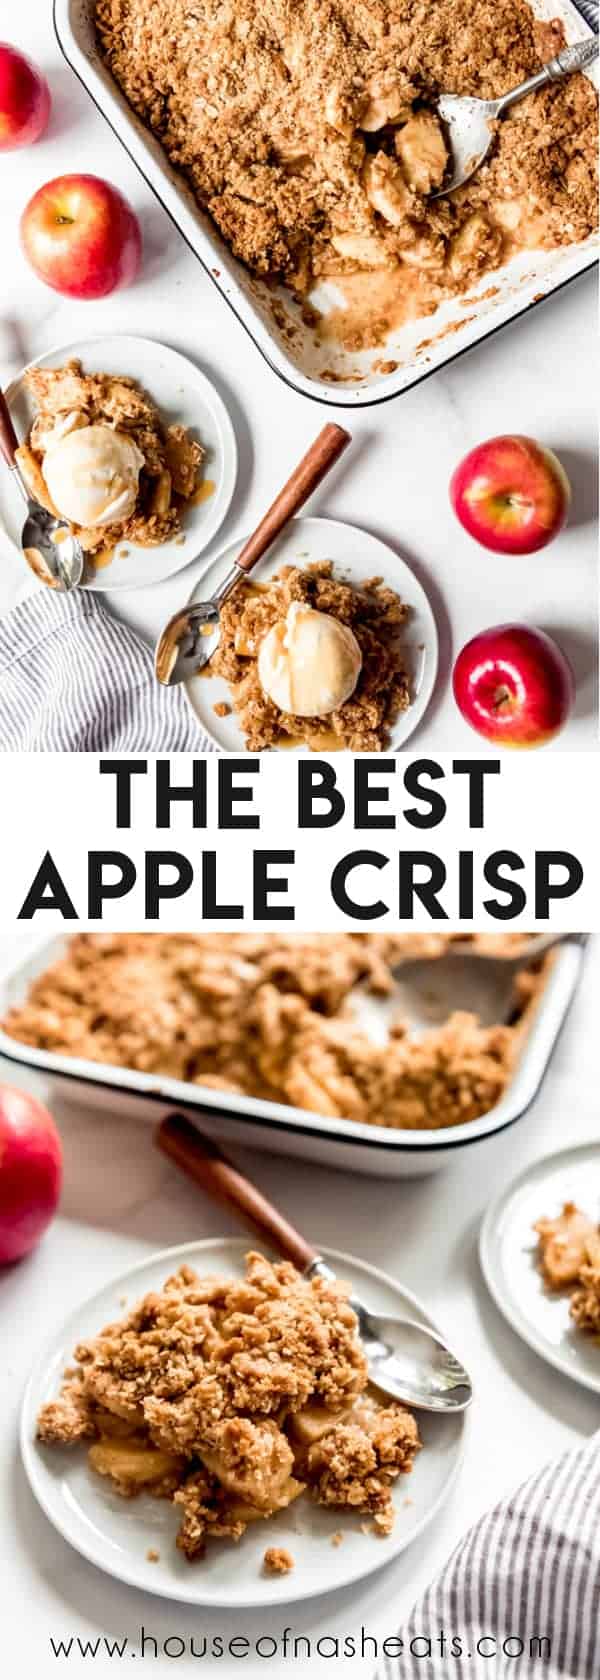 Apple Crisp - House of Nash Eats